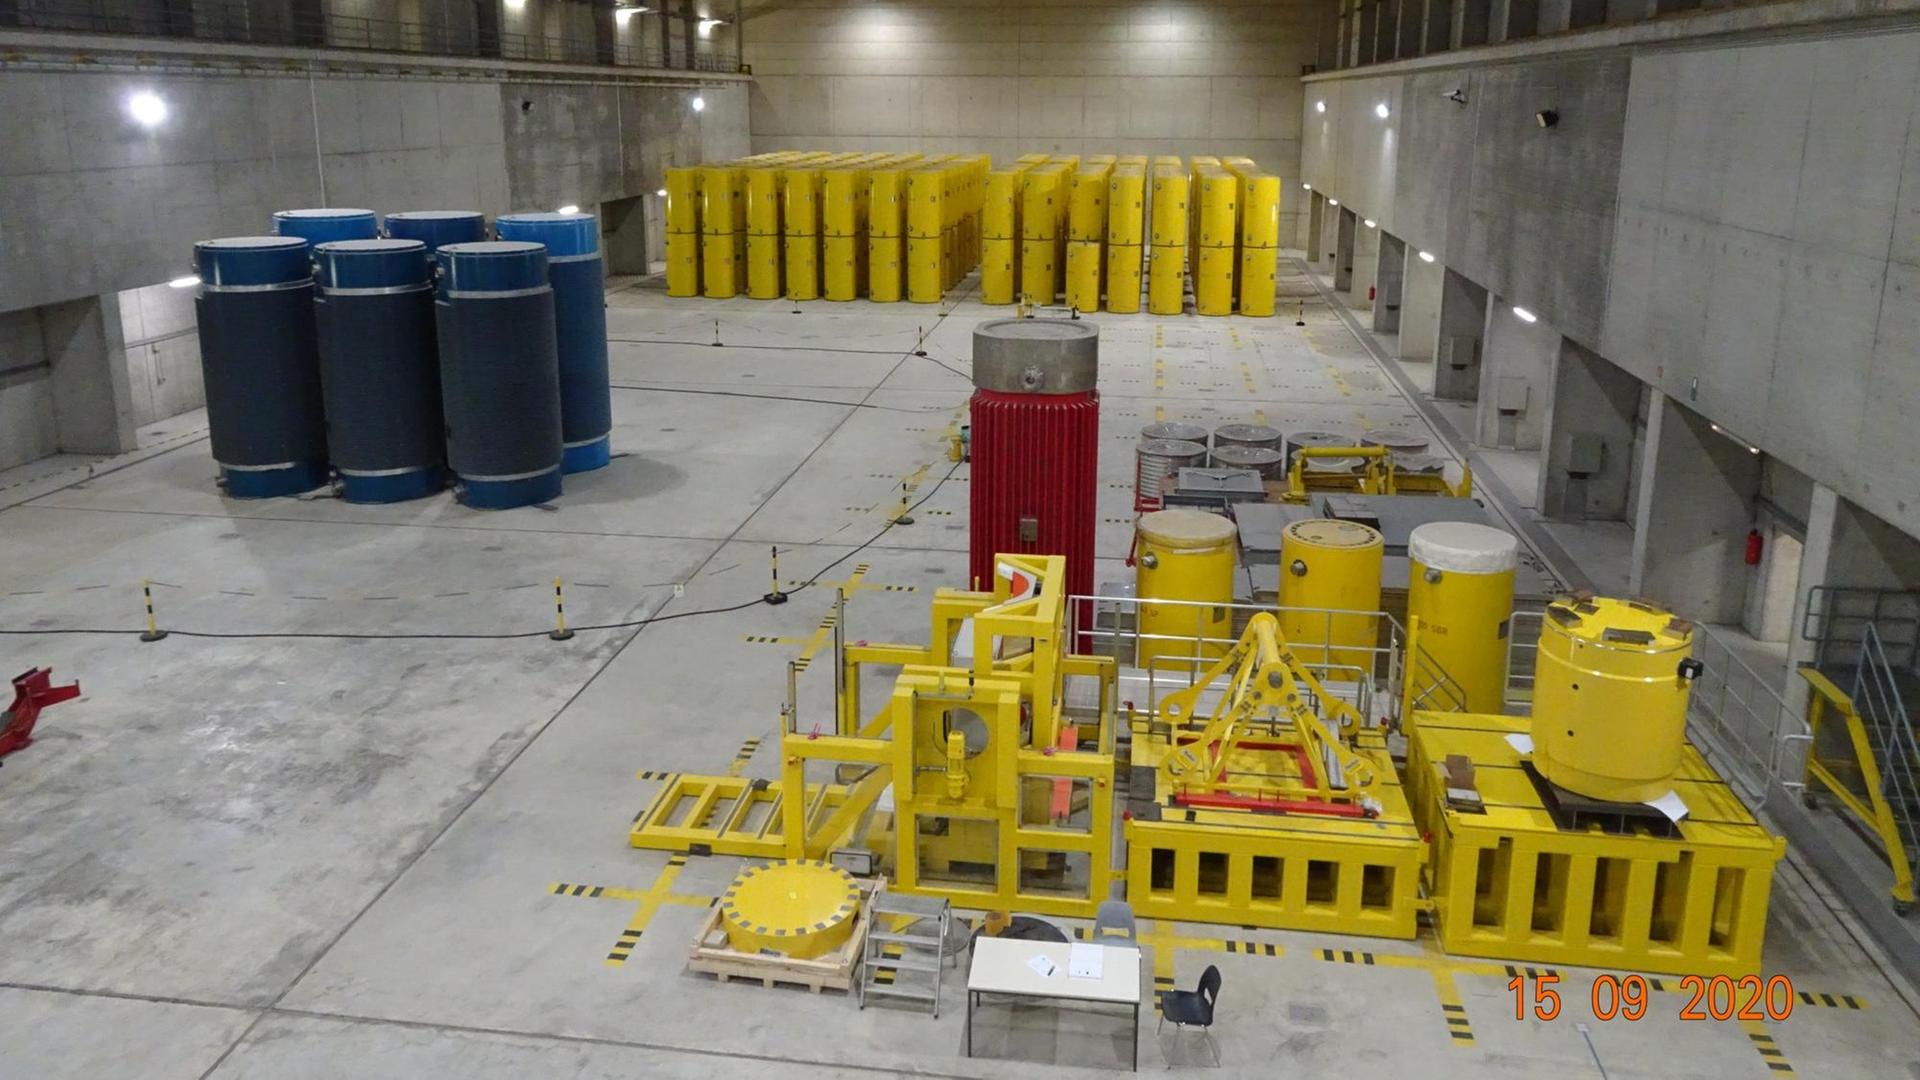 Blick in die Halle des Zwischenlagers Ahaus: In verschiedenen Bereichen der aus massivem Beton errichteten Halle stehen gelbe, blaue und rote "Castoren" - die Sicherheitsbehälter mit den ausgebrannten Kernbrennstäben